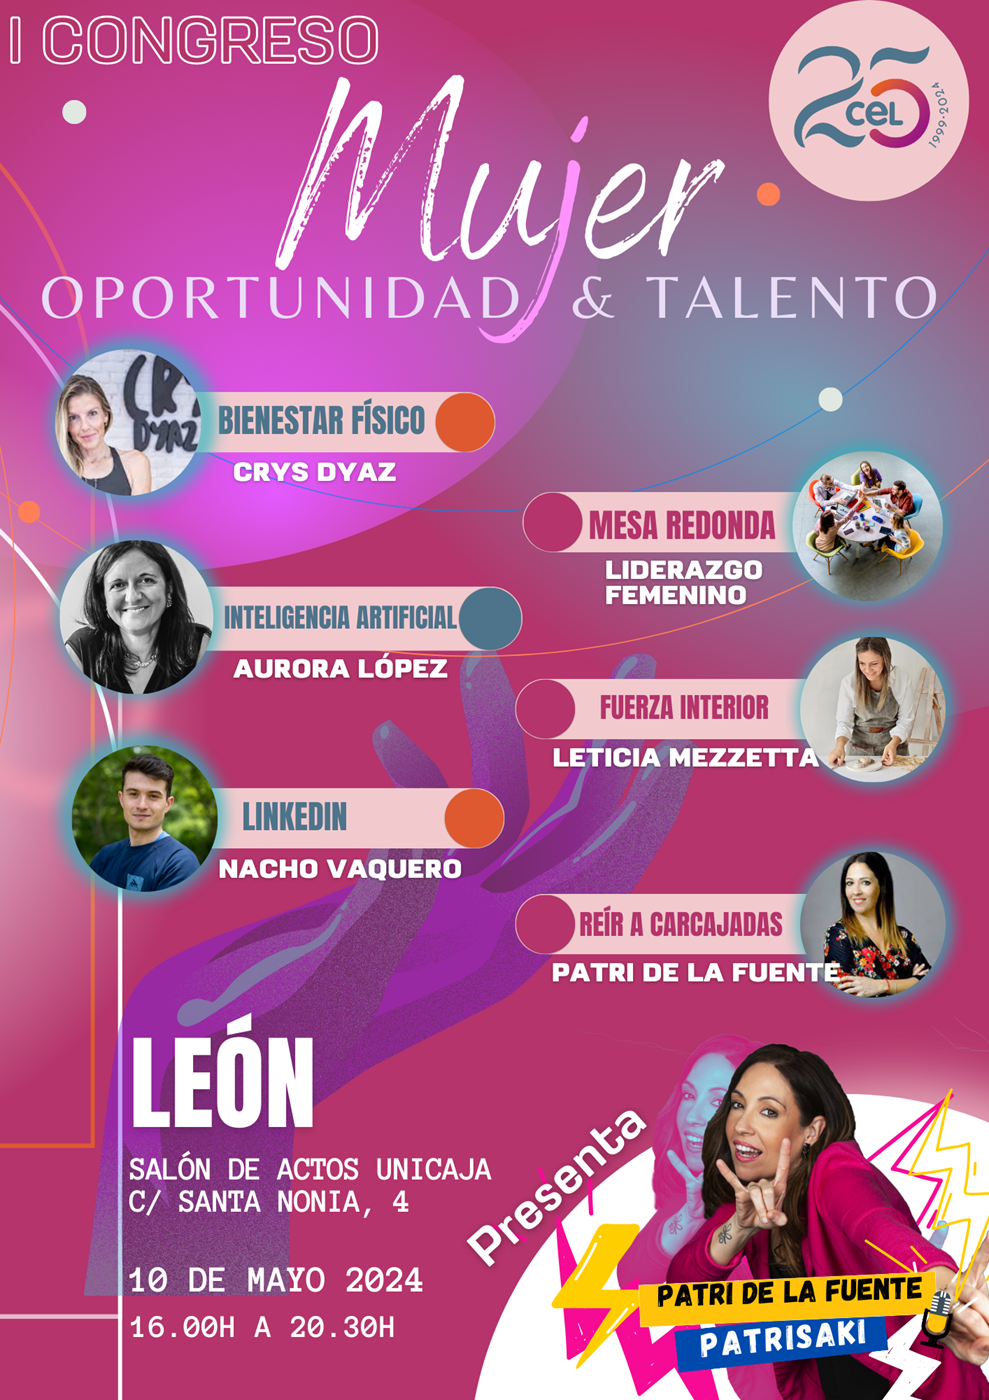 I Congreso Mujer: Oportunidad y Talento